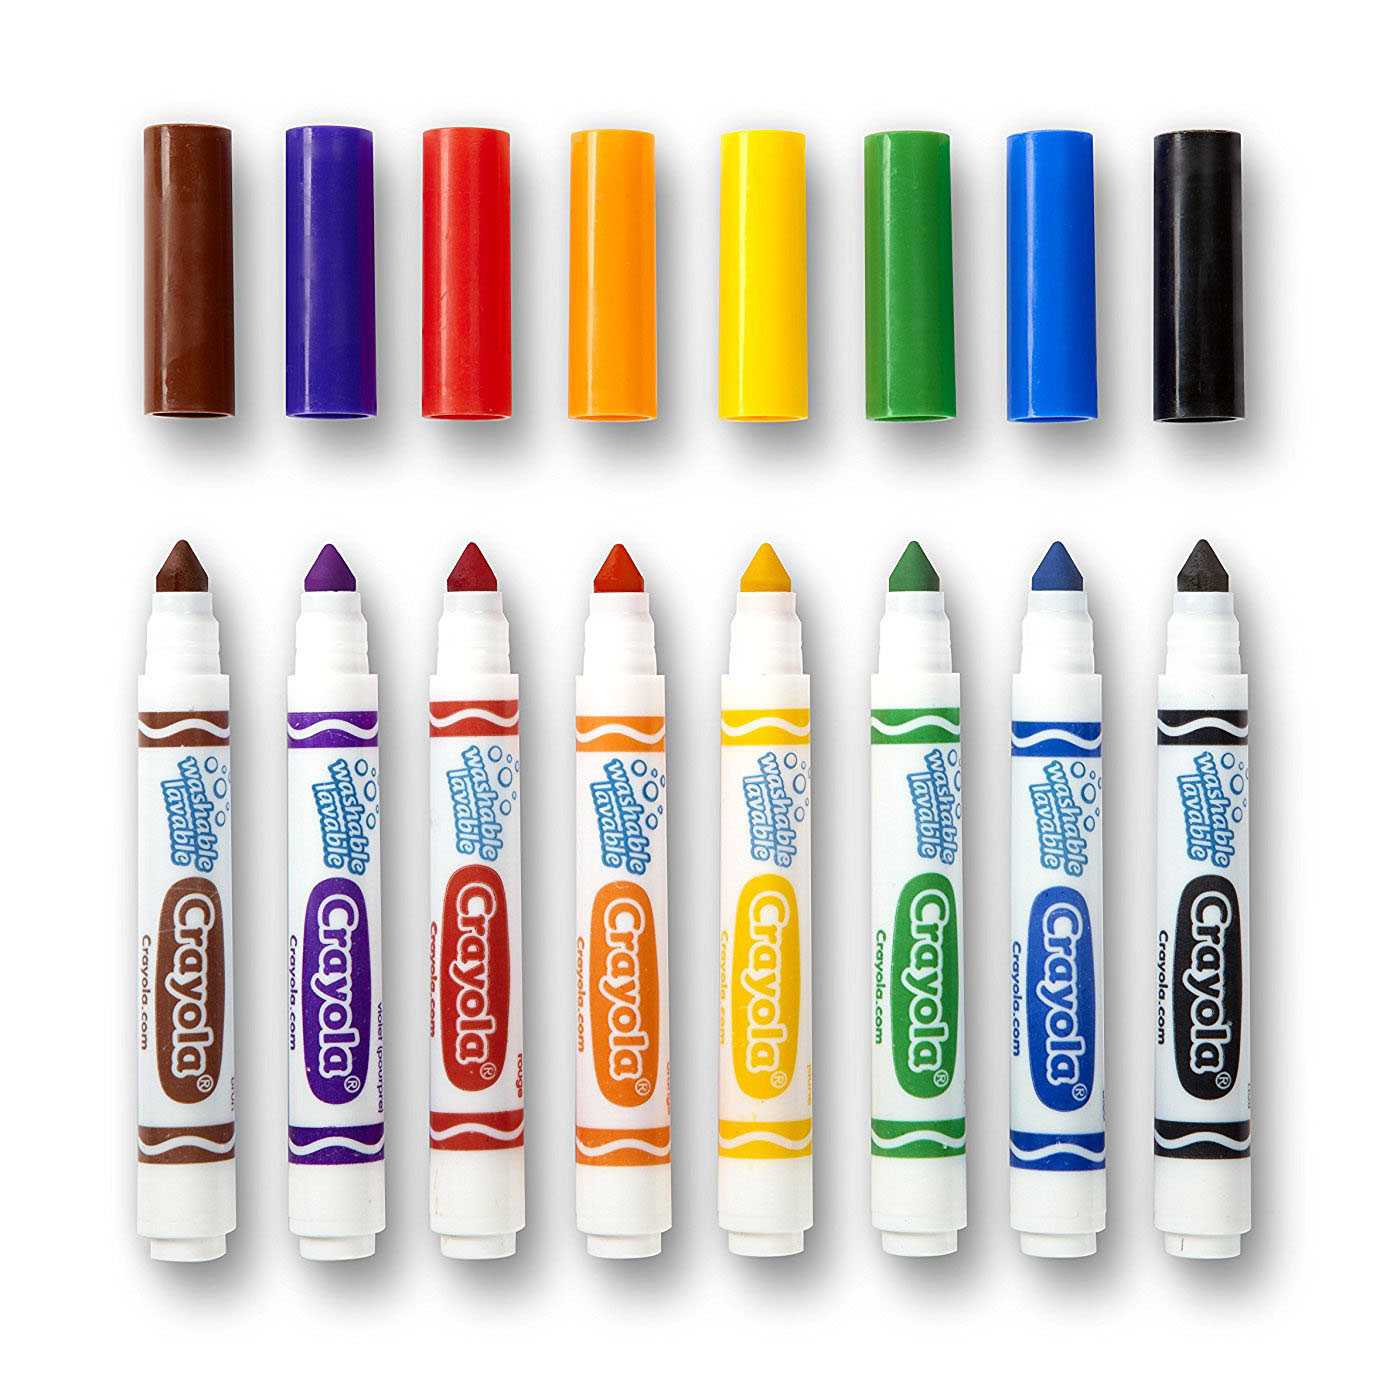 Crayola Ultra Clean Viltstiften met Kegelpunt, 8st.